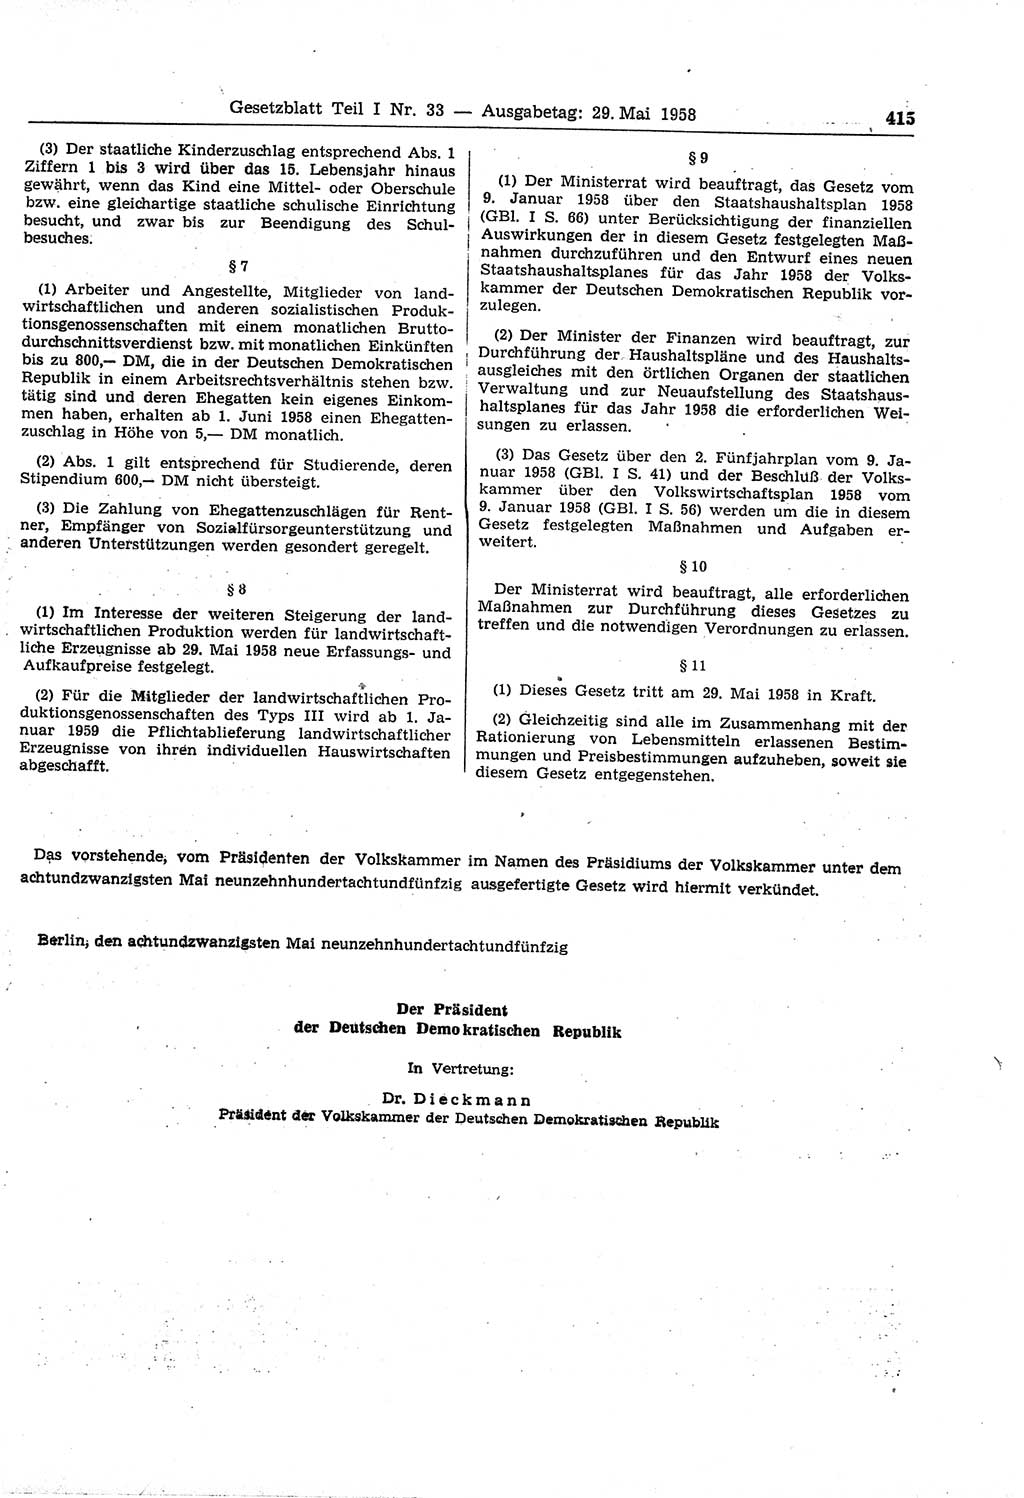 Gesetzblatt (GBl.) der Deutschen Demokratischen Republik (DDR) Teil Ⅰ 1958, Seite 415 (GBl. DDR Ⅰ 1958, S. 415)